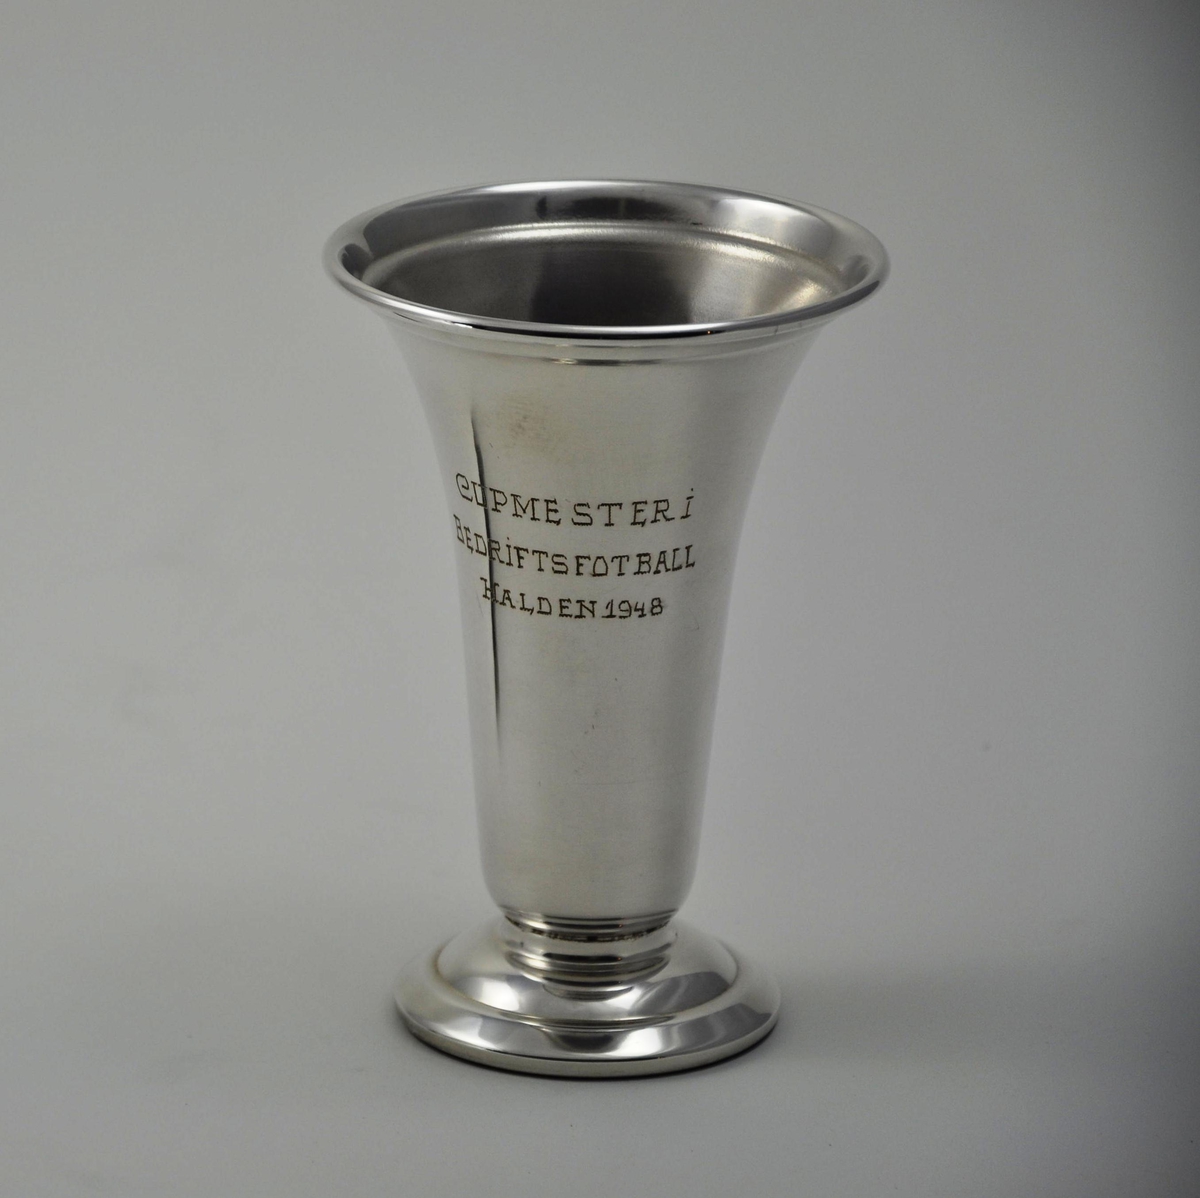 Pokal i sølv til cupvinnerne av bedriftsfotballen i Halden i 1948.